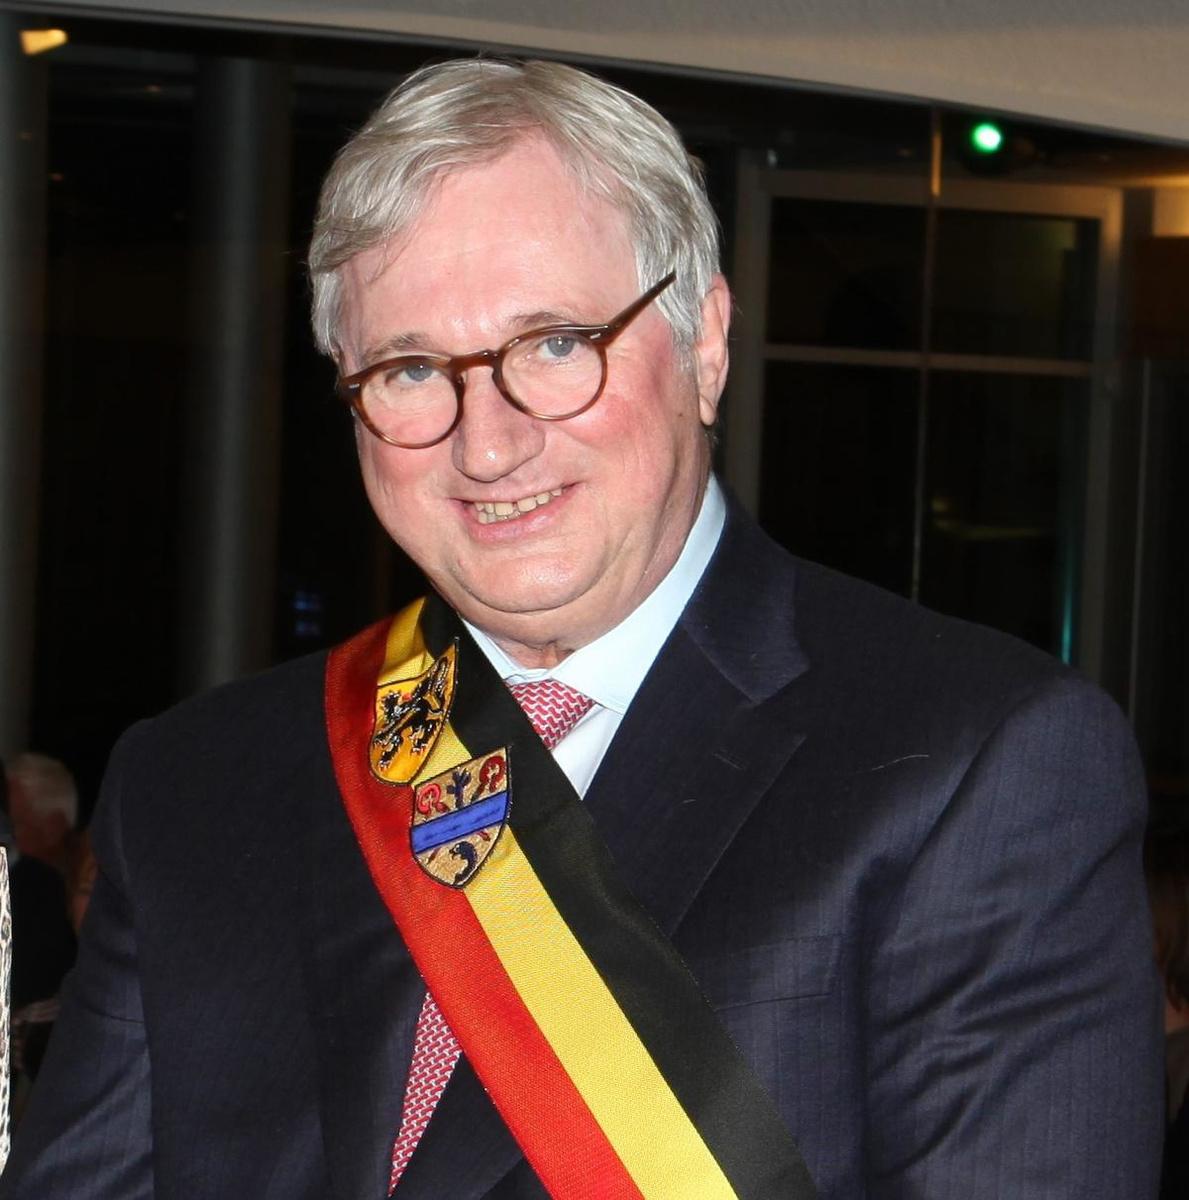 Het besluit werd genomen door burgemeester Marc Vanden Bussche van Koksijde.